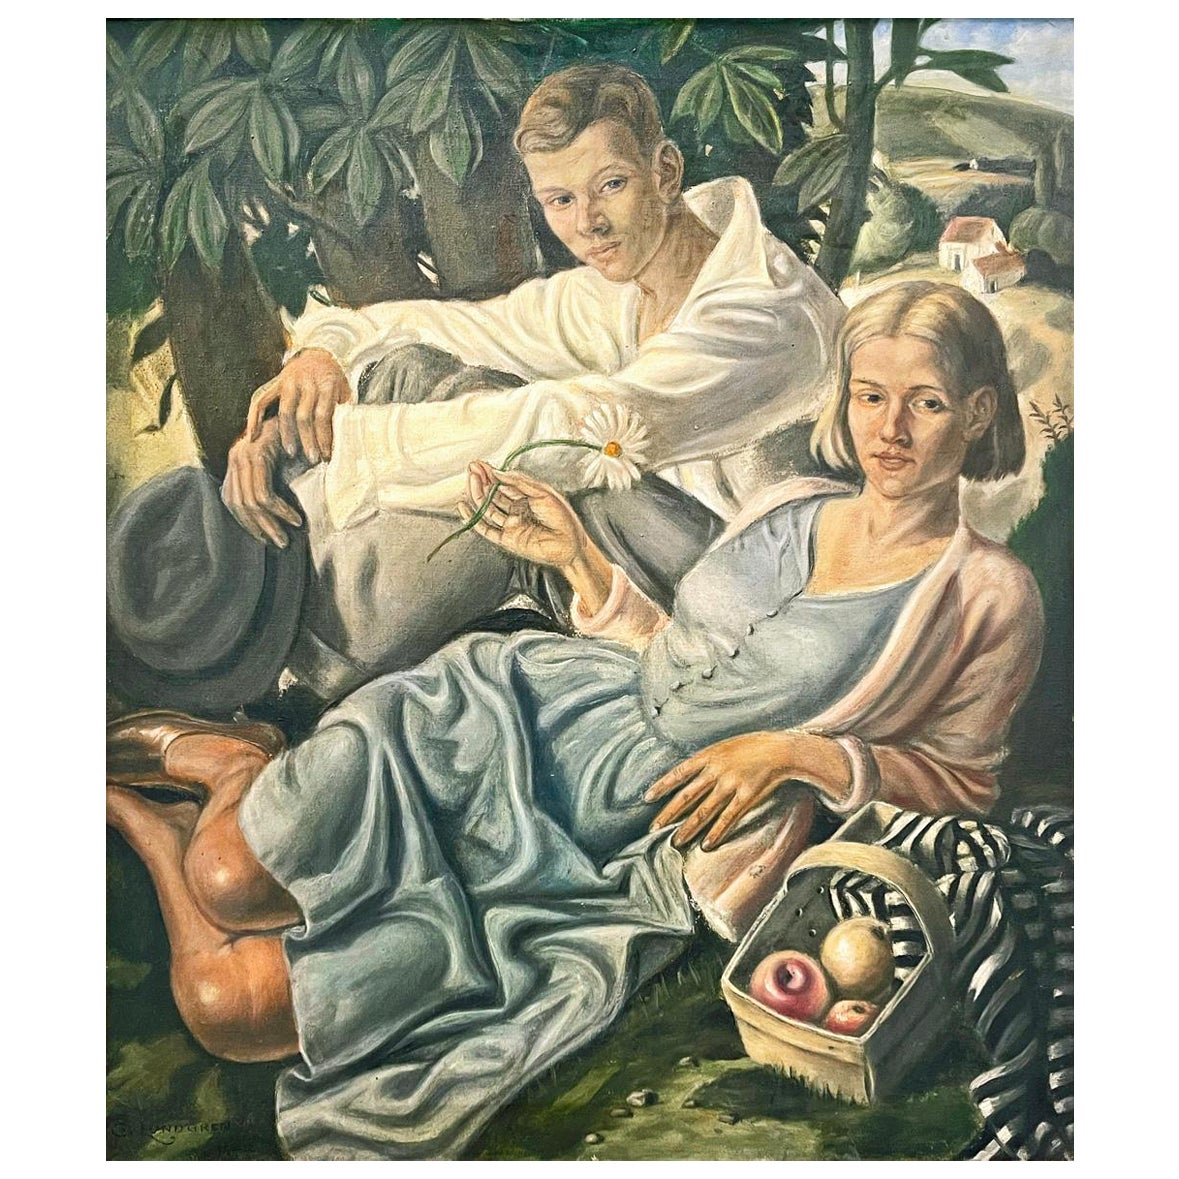 « Couple with Apples », copie suédoise de l'œuvre de maître britannique